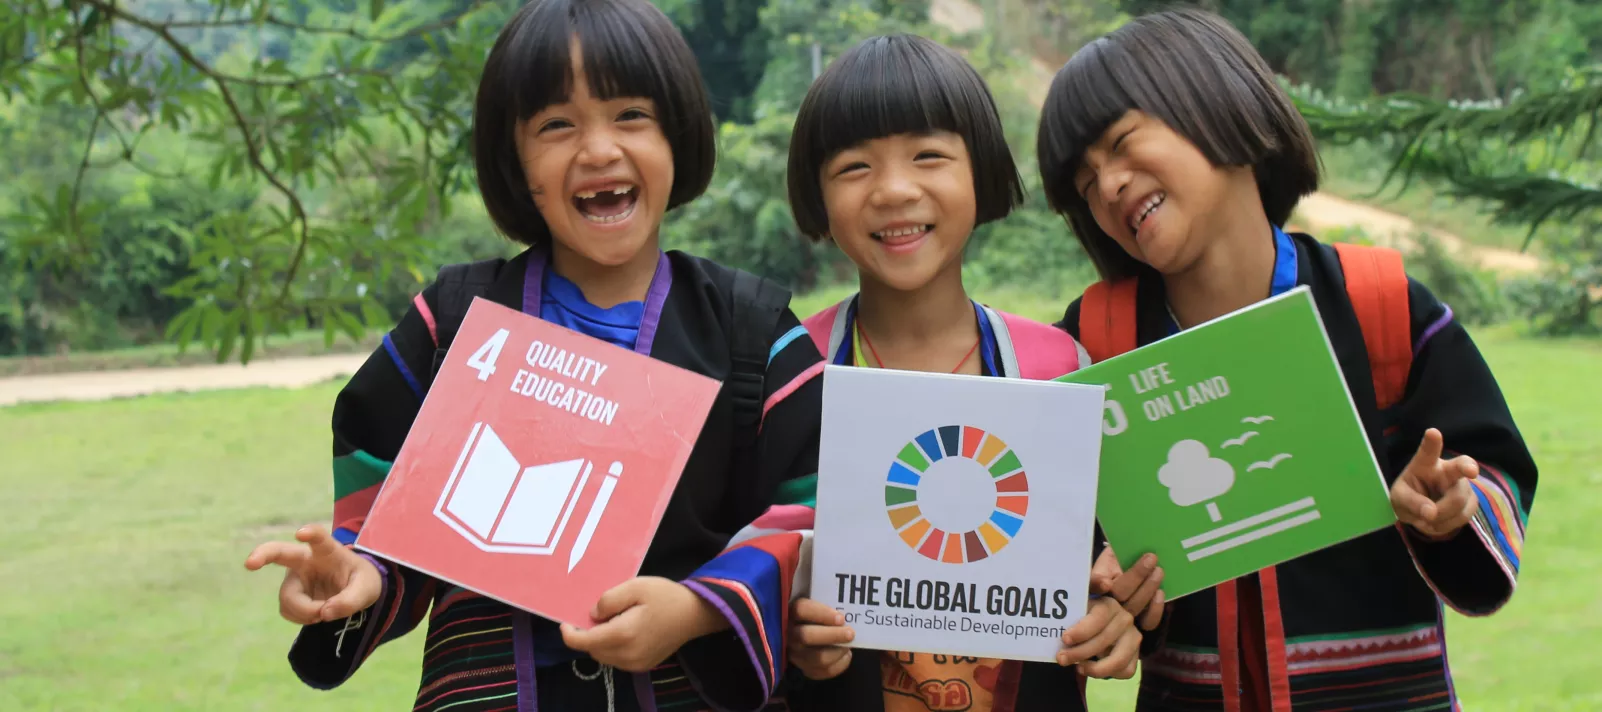 En Thaïlande, trois jeunes filles sourient alors qu'elles posent avec des affiches sur les objectifs de développement durable.